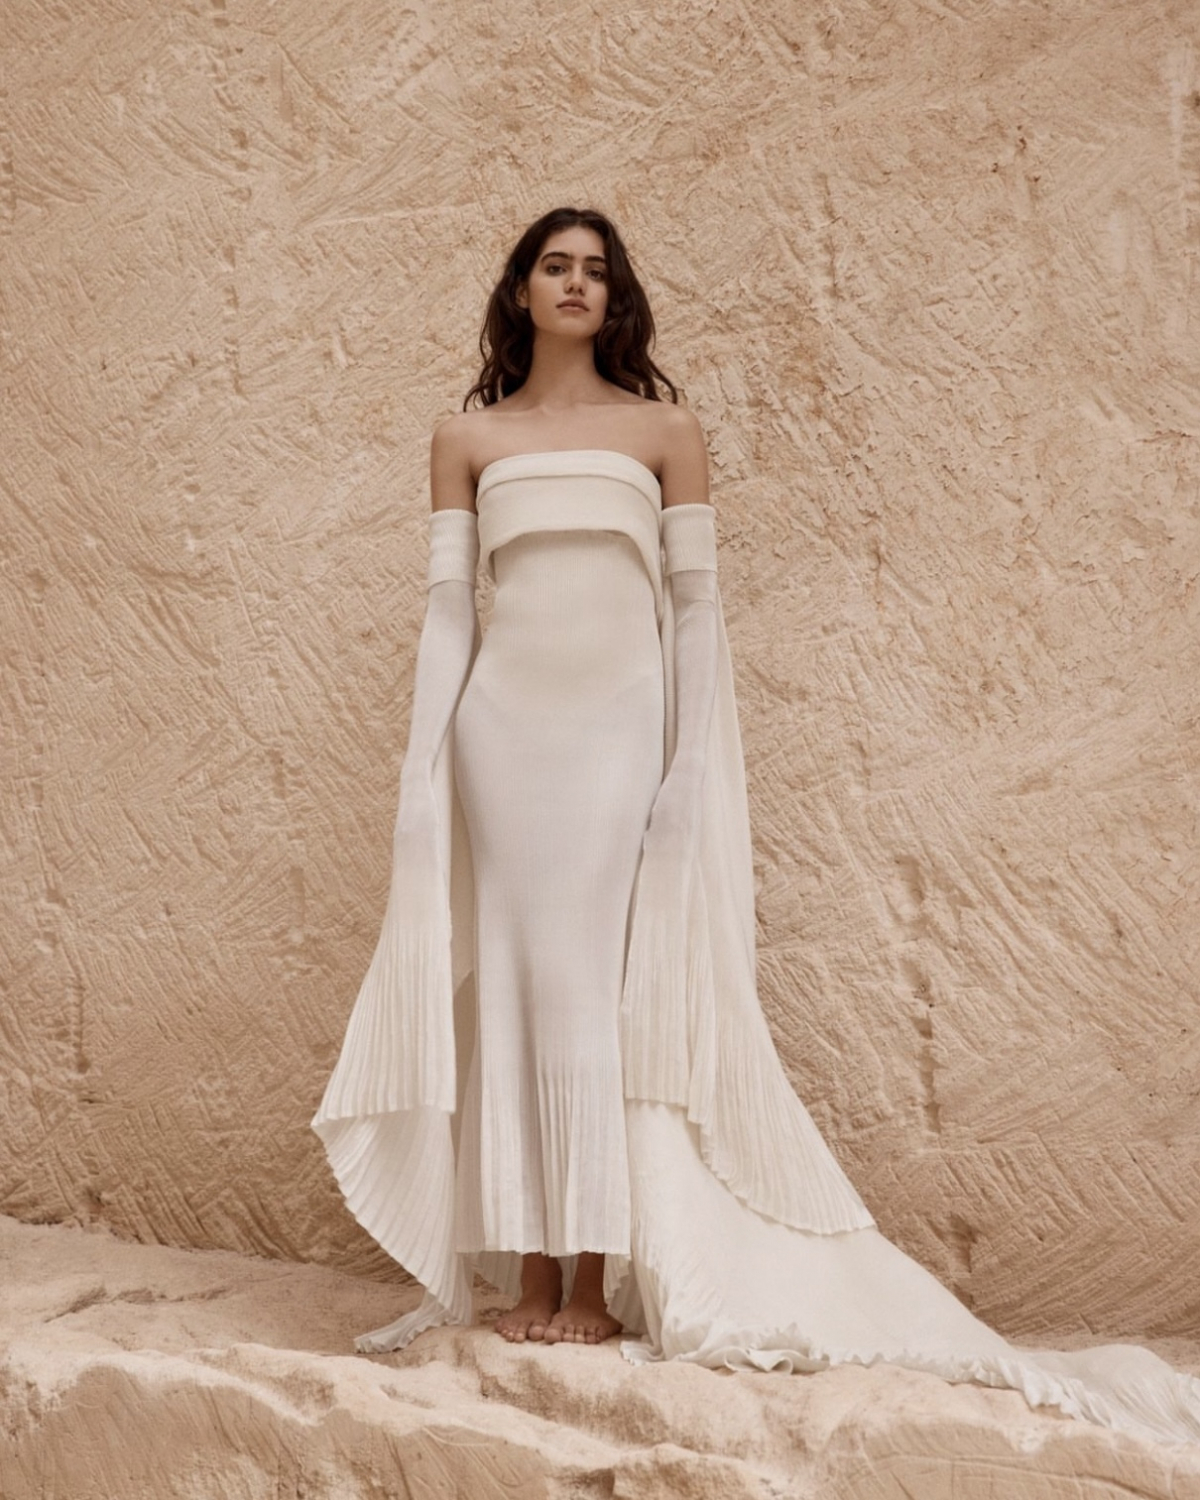 23 Wedding dresses - Slim Hourglass body shape bride ideas